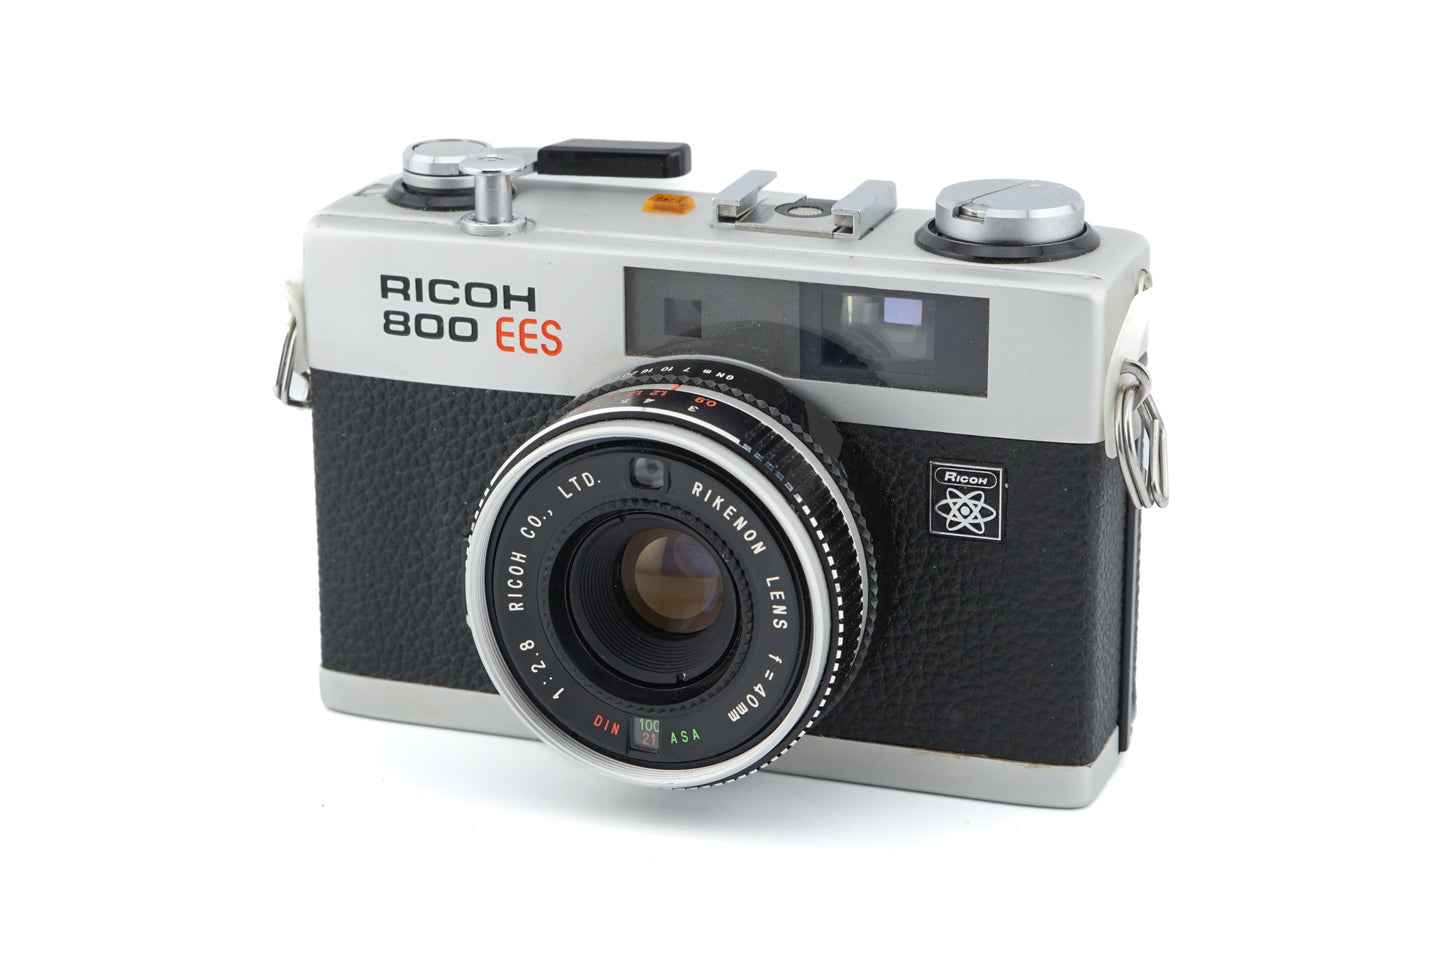 Ricoh 800 EES - Camera